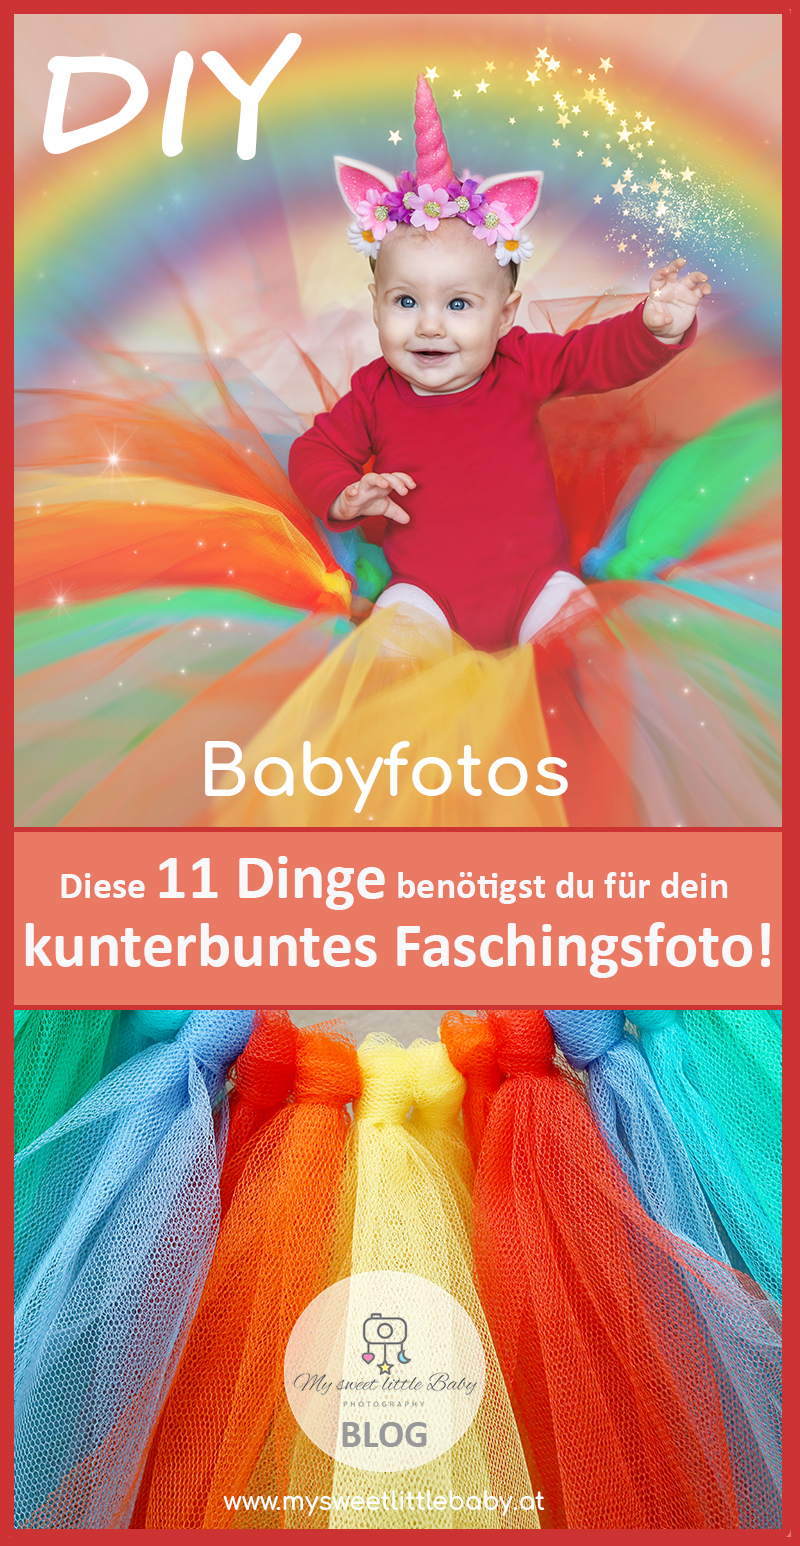 DIY Babyfotos! Kunterbunte Faschingsfotos mit deinem Baby - Meisterfotografin Barbara Lachner - Barbara Lachner Blog-Diese 11 Dinge benötigst du für dein kunterbuntes Faschingsfotoshooting | Vorbereitung | Fotoshooting | Bildbearbeitung